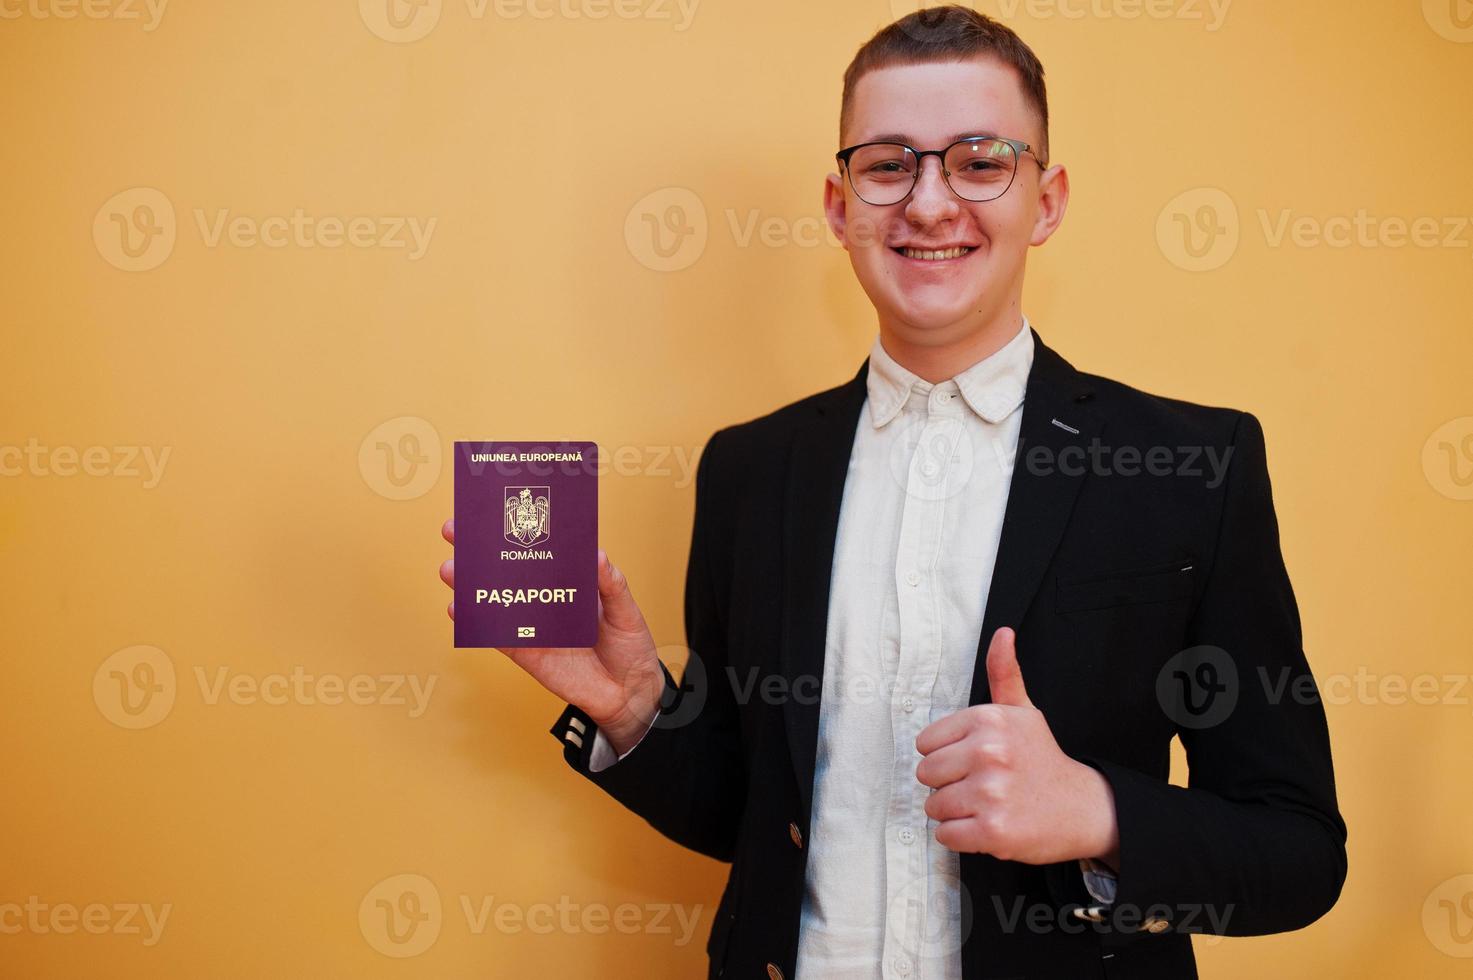 joven apuesto que tiene un pasaporte rumano de fondo amarillo, feliz y muestra el pulgar hacia arriba. viajar al concepto de país de europa. foto